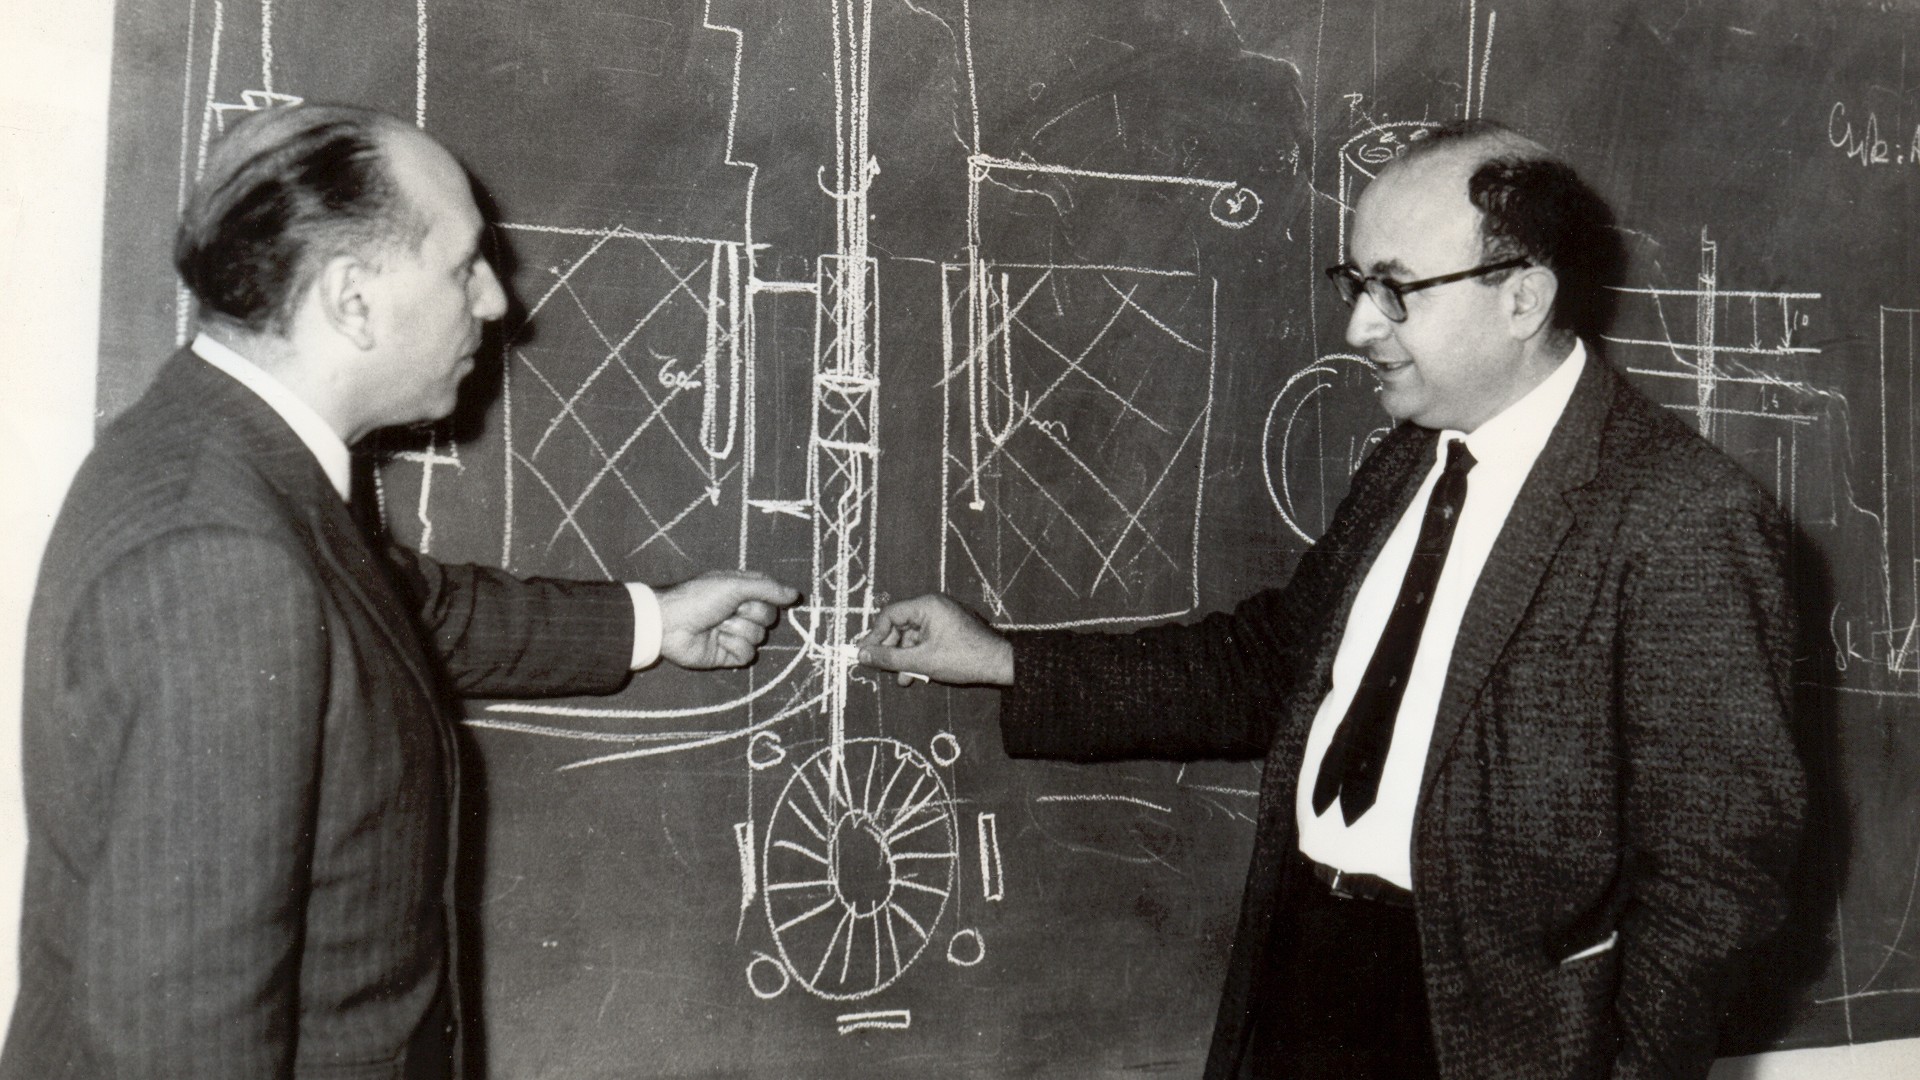 El entonces presidente de la CNEA, Oscar Quihillalt, consiguió los planos del Argonaut convencido de que Argentina debía construir su propio reactor.